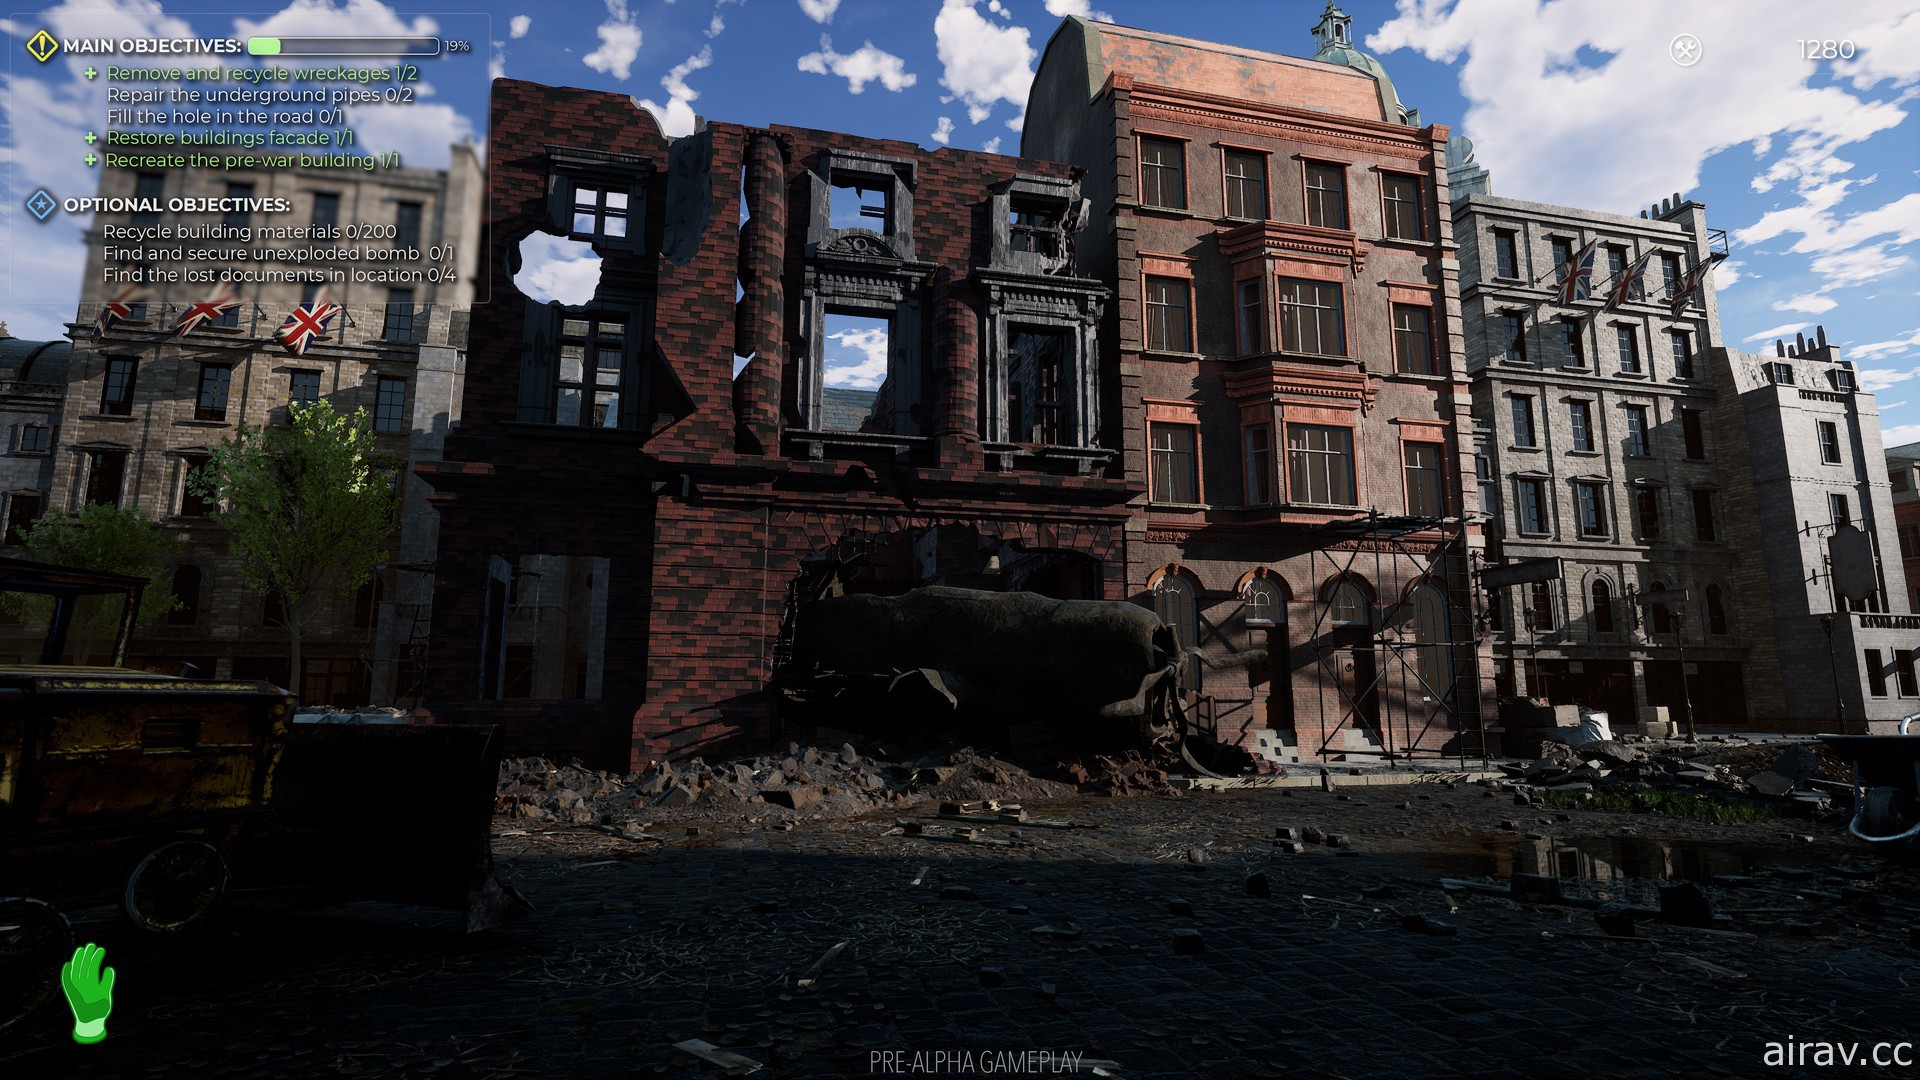 模拟新作 《二战重建者 WW2 Rebuilder》曝光 帮助受战争摧残城市找回往日风貌